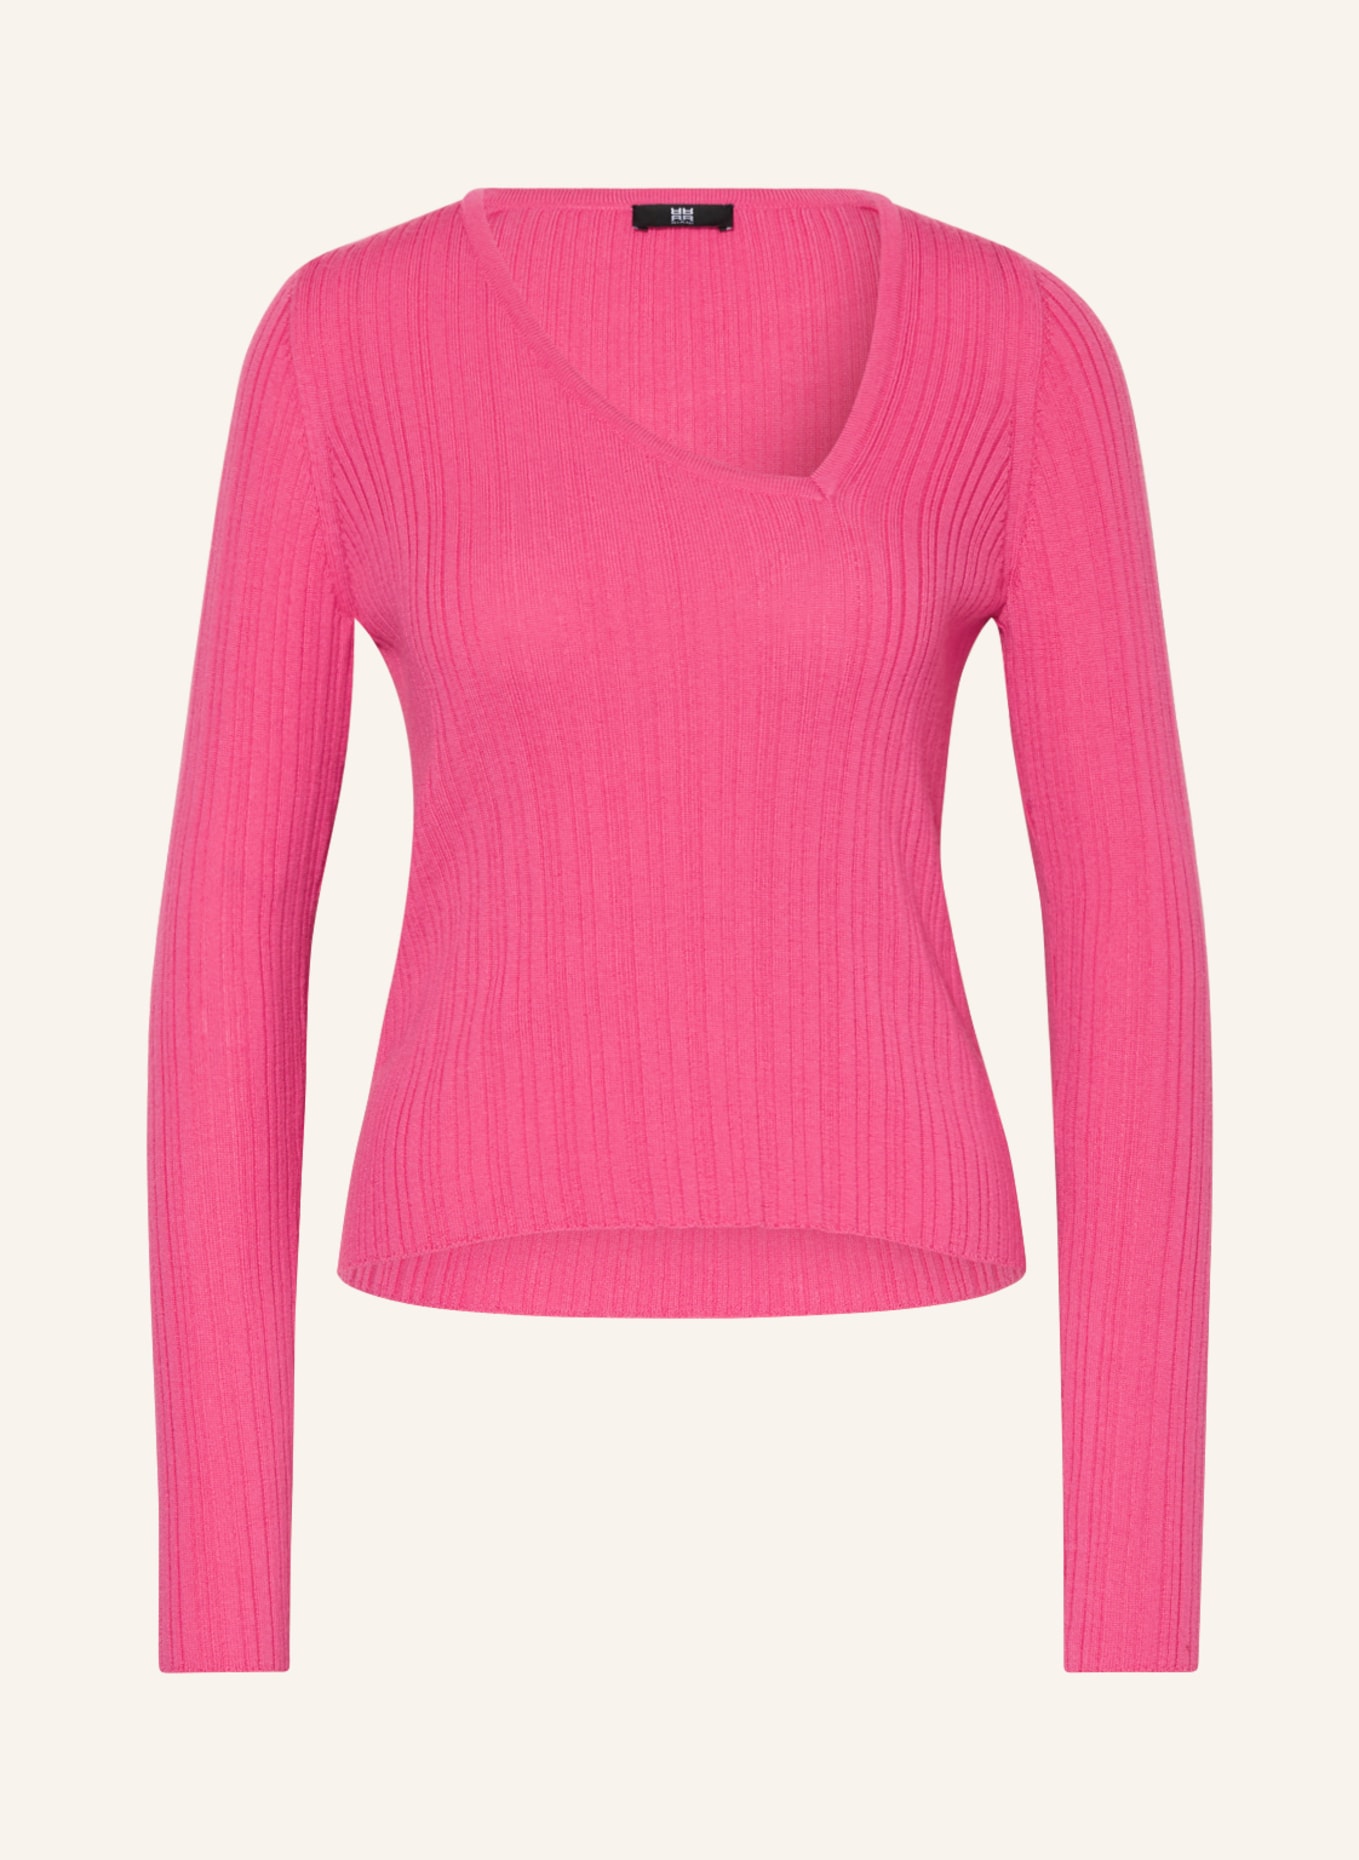 RIANI Pullover, Farbe: PINK (Bild 1)